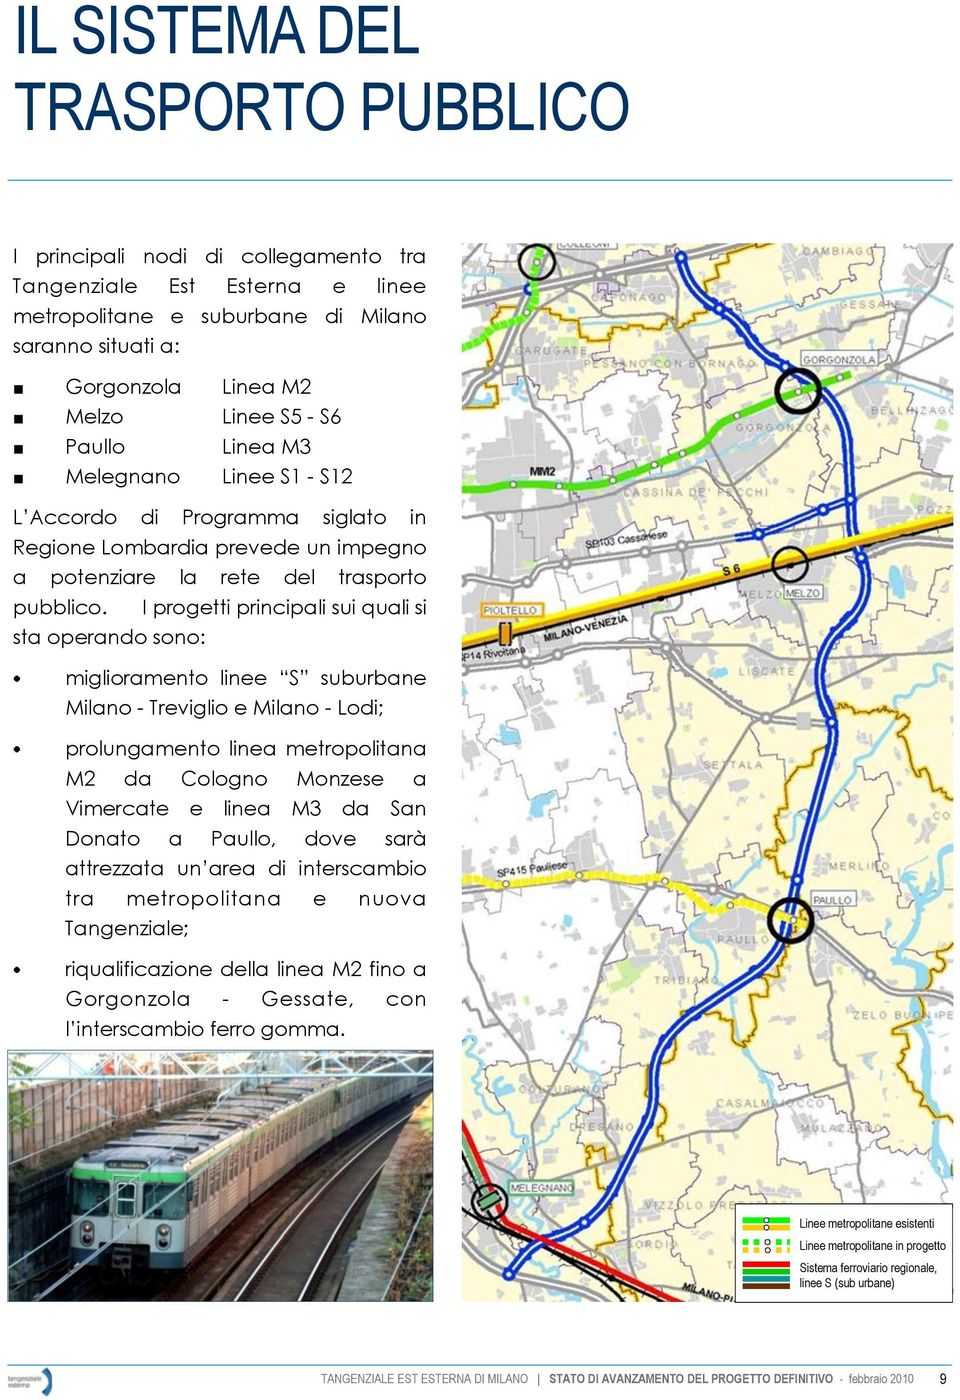 I progetti principali sui quali si sta operando sono: miglioramento linee S suburbane Milano - Treviglio e Milano - Lodi; prolungamento linea metropolitana M2 da Cologno Monzese a Vimercate e linea